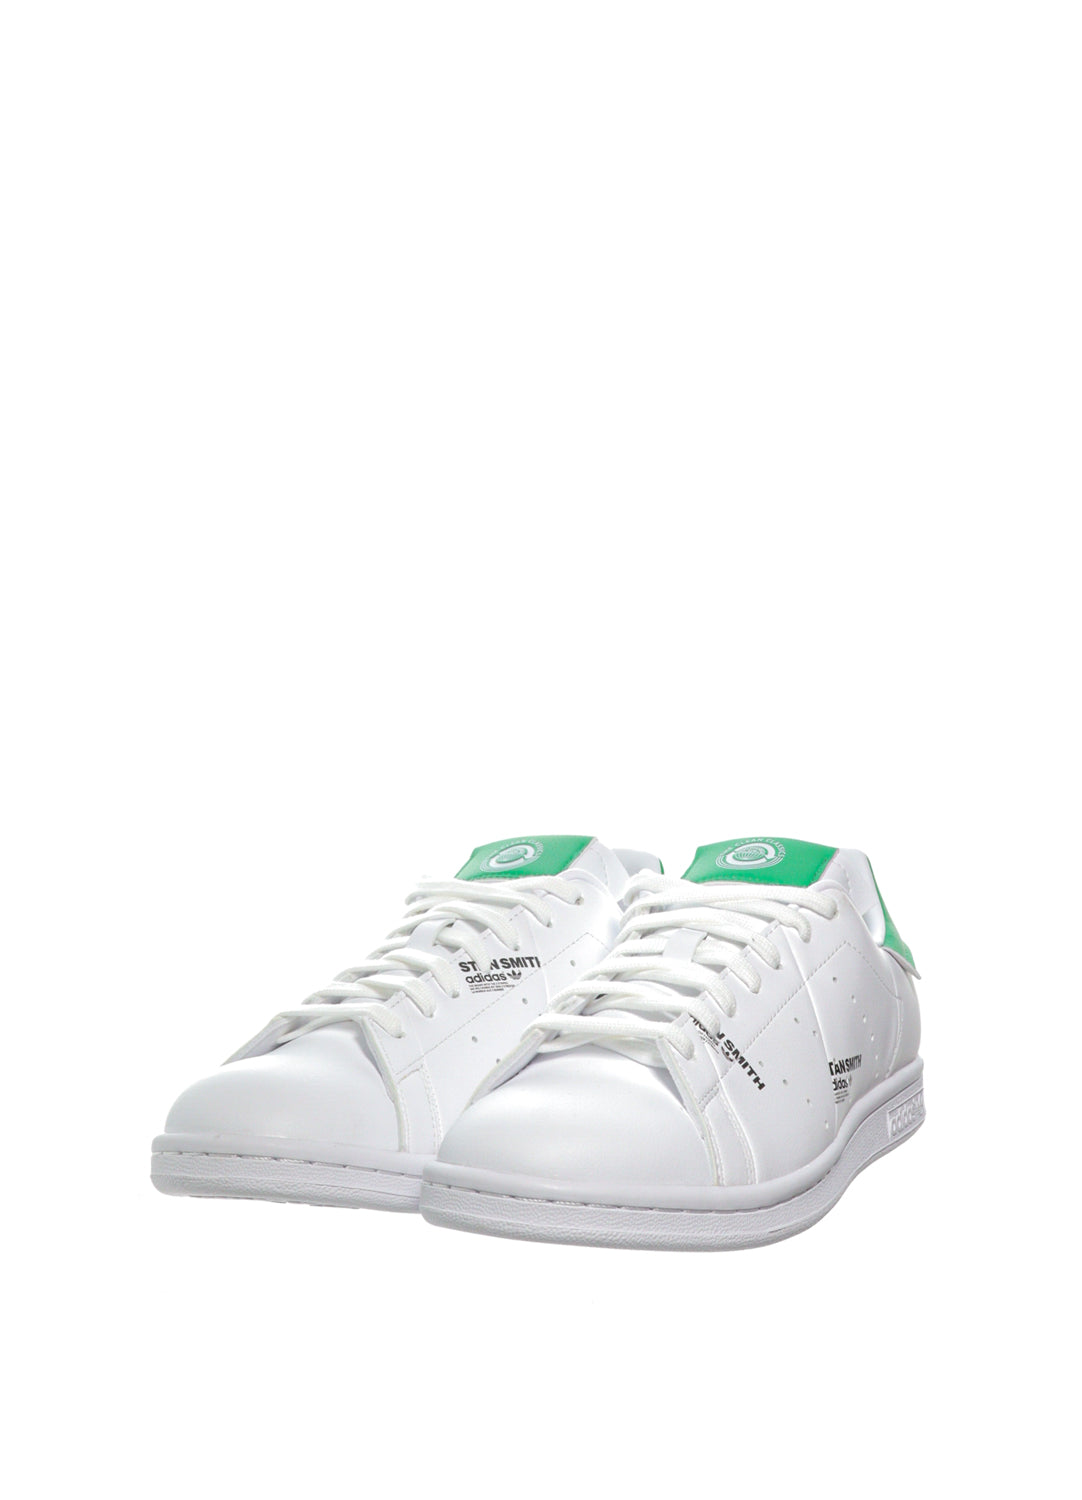 Pantofi sport Stan Smith Adidas Originals albi